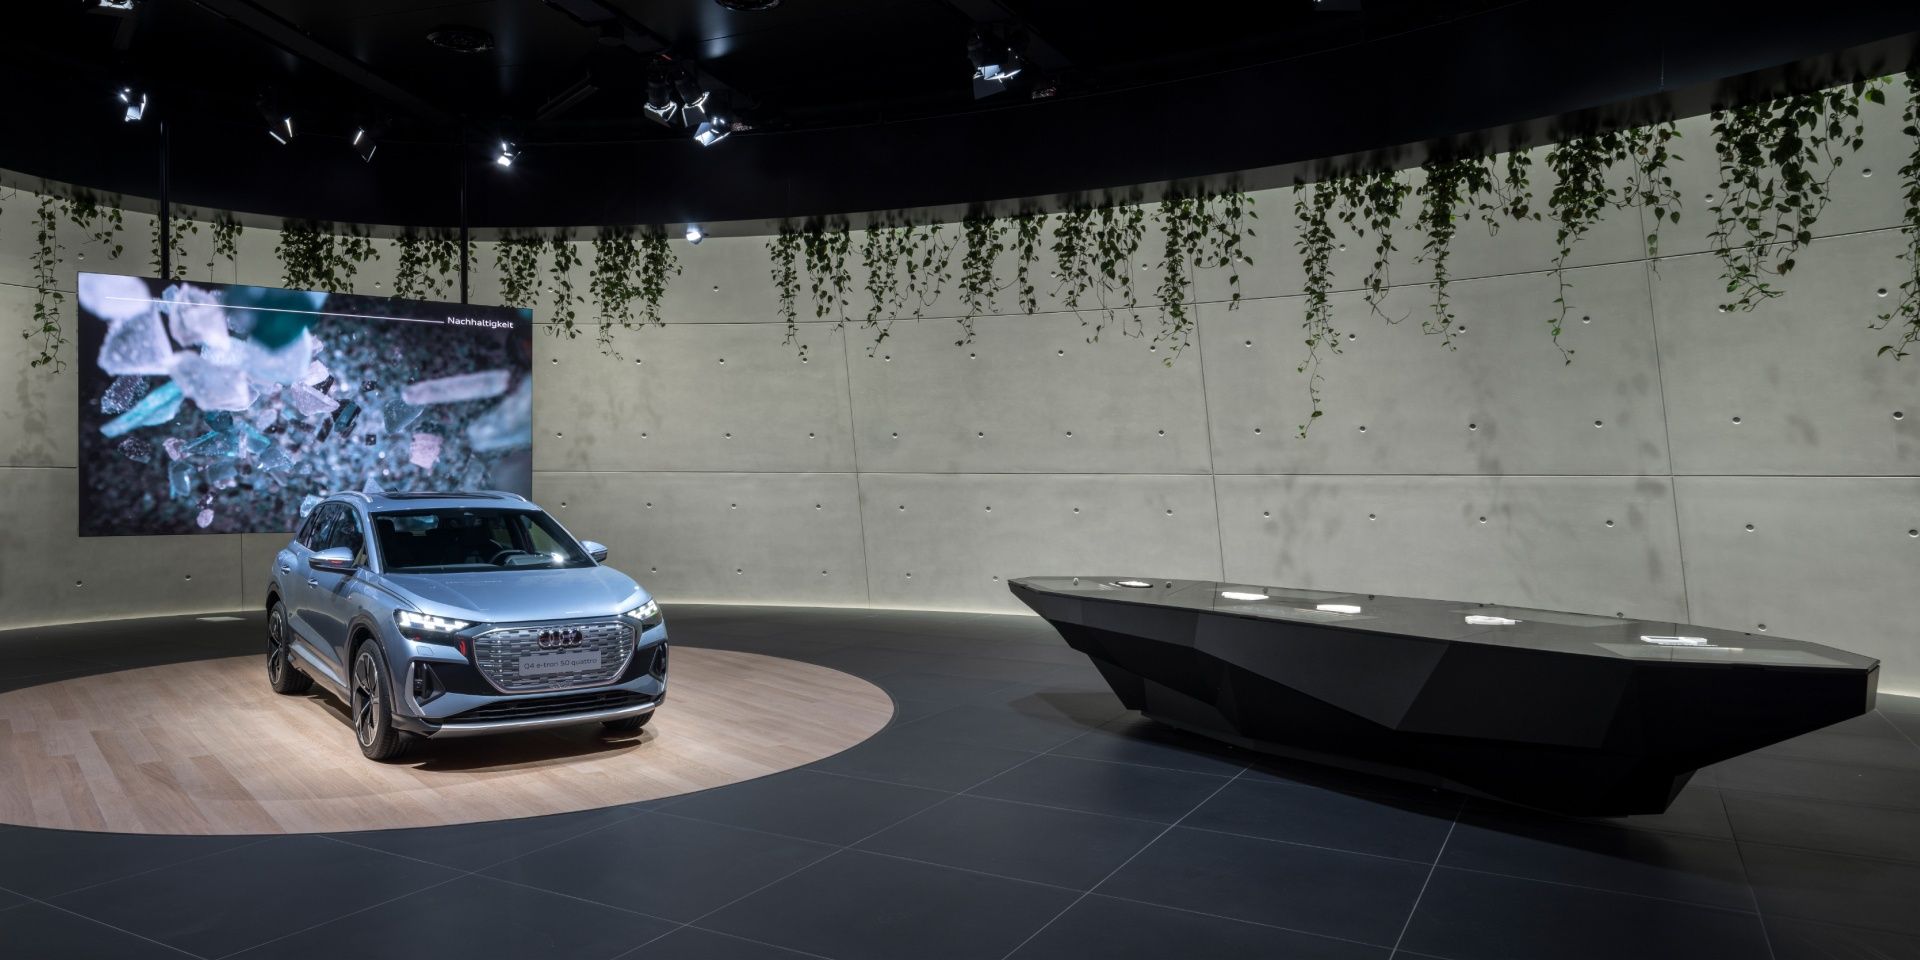 Der Audi Q4 e-tron und eine Projektion zum Thema Nachhaltigkeit sind zu sehen. Daneben der Infotisch.